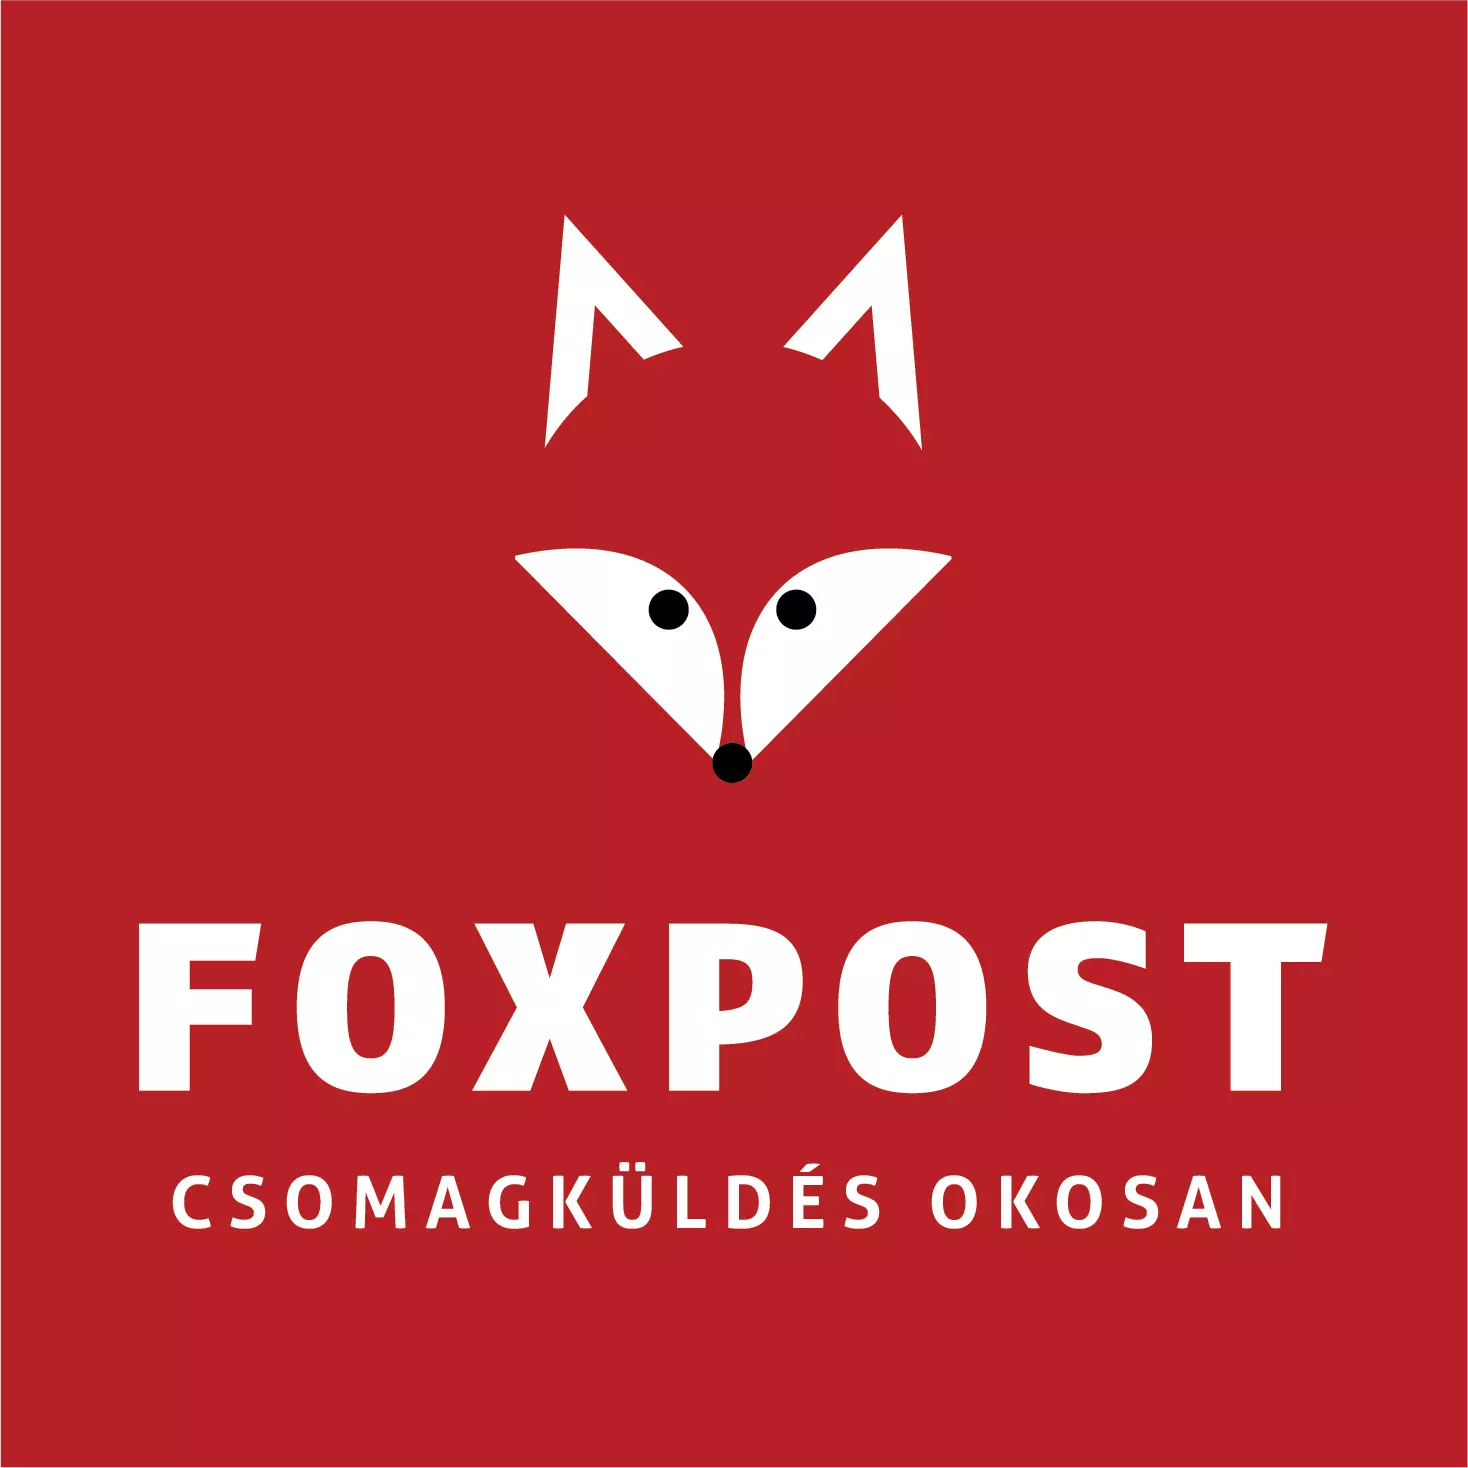 Foxpost csomagautomaták